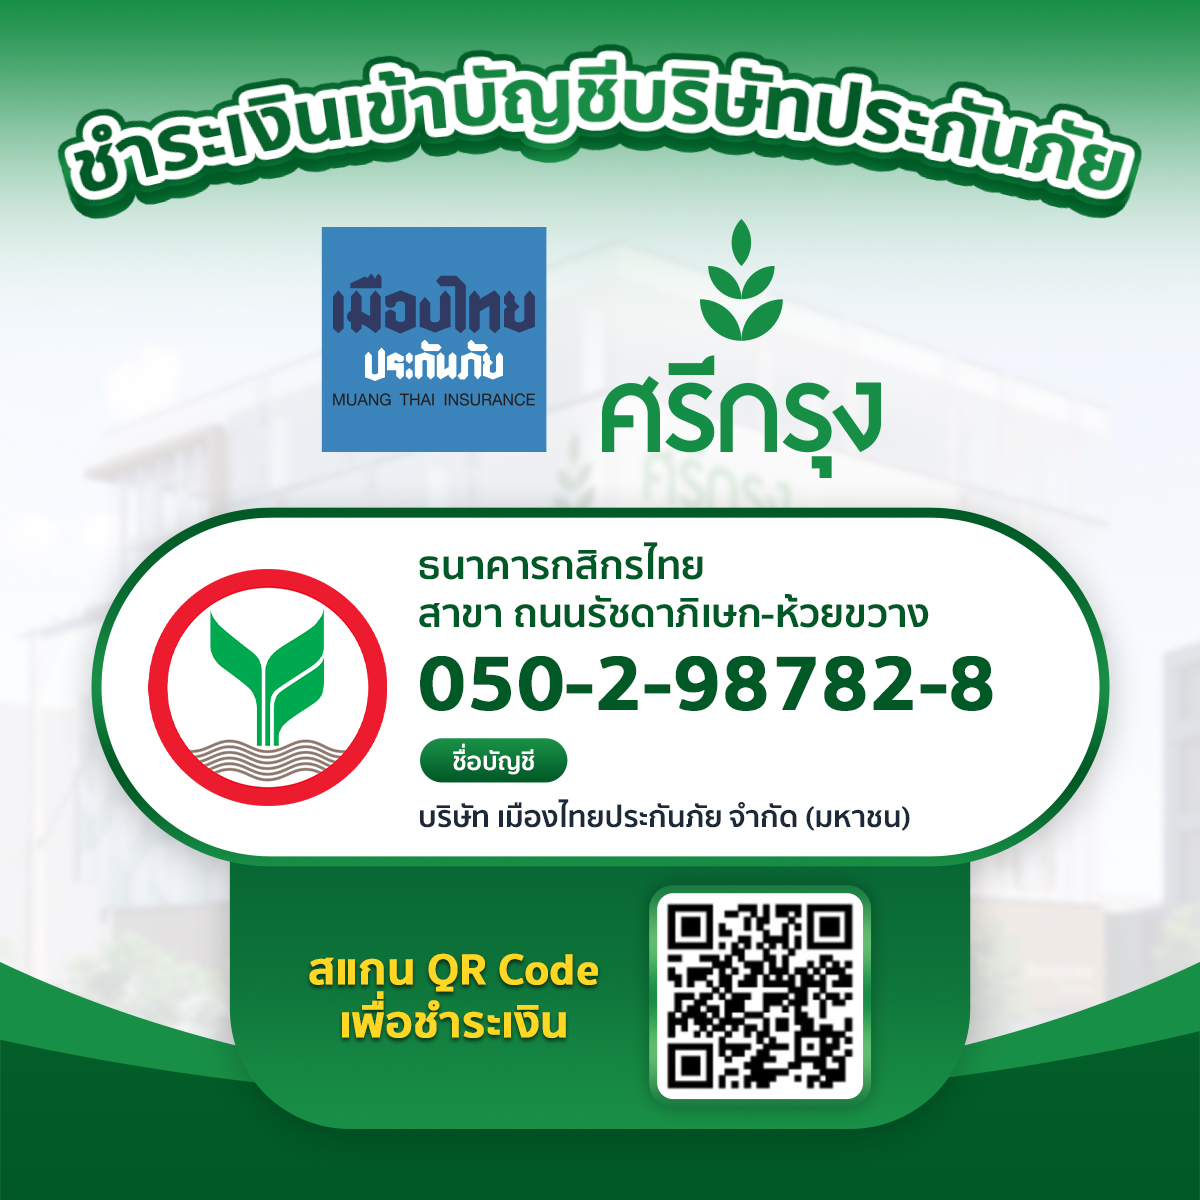 บัญชีธนาคารเมืองไทยประกันภัยตรง